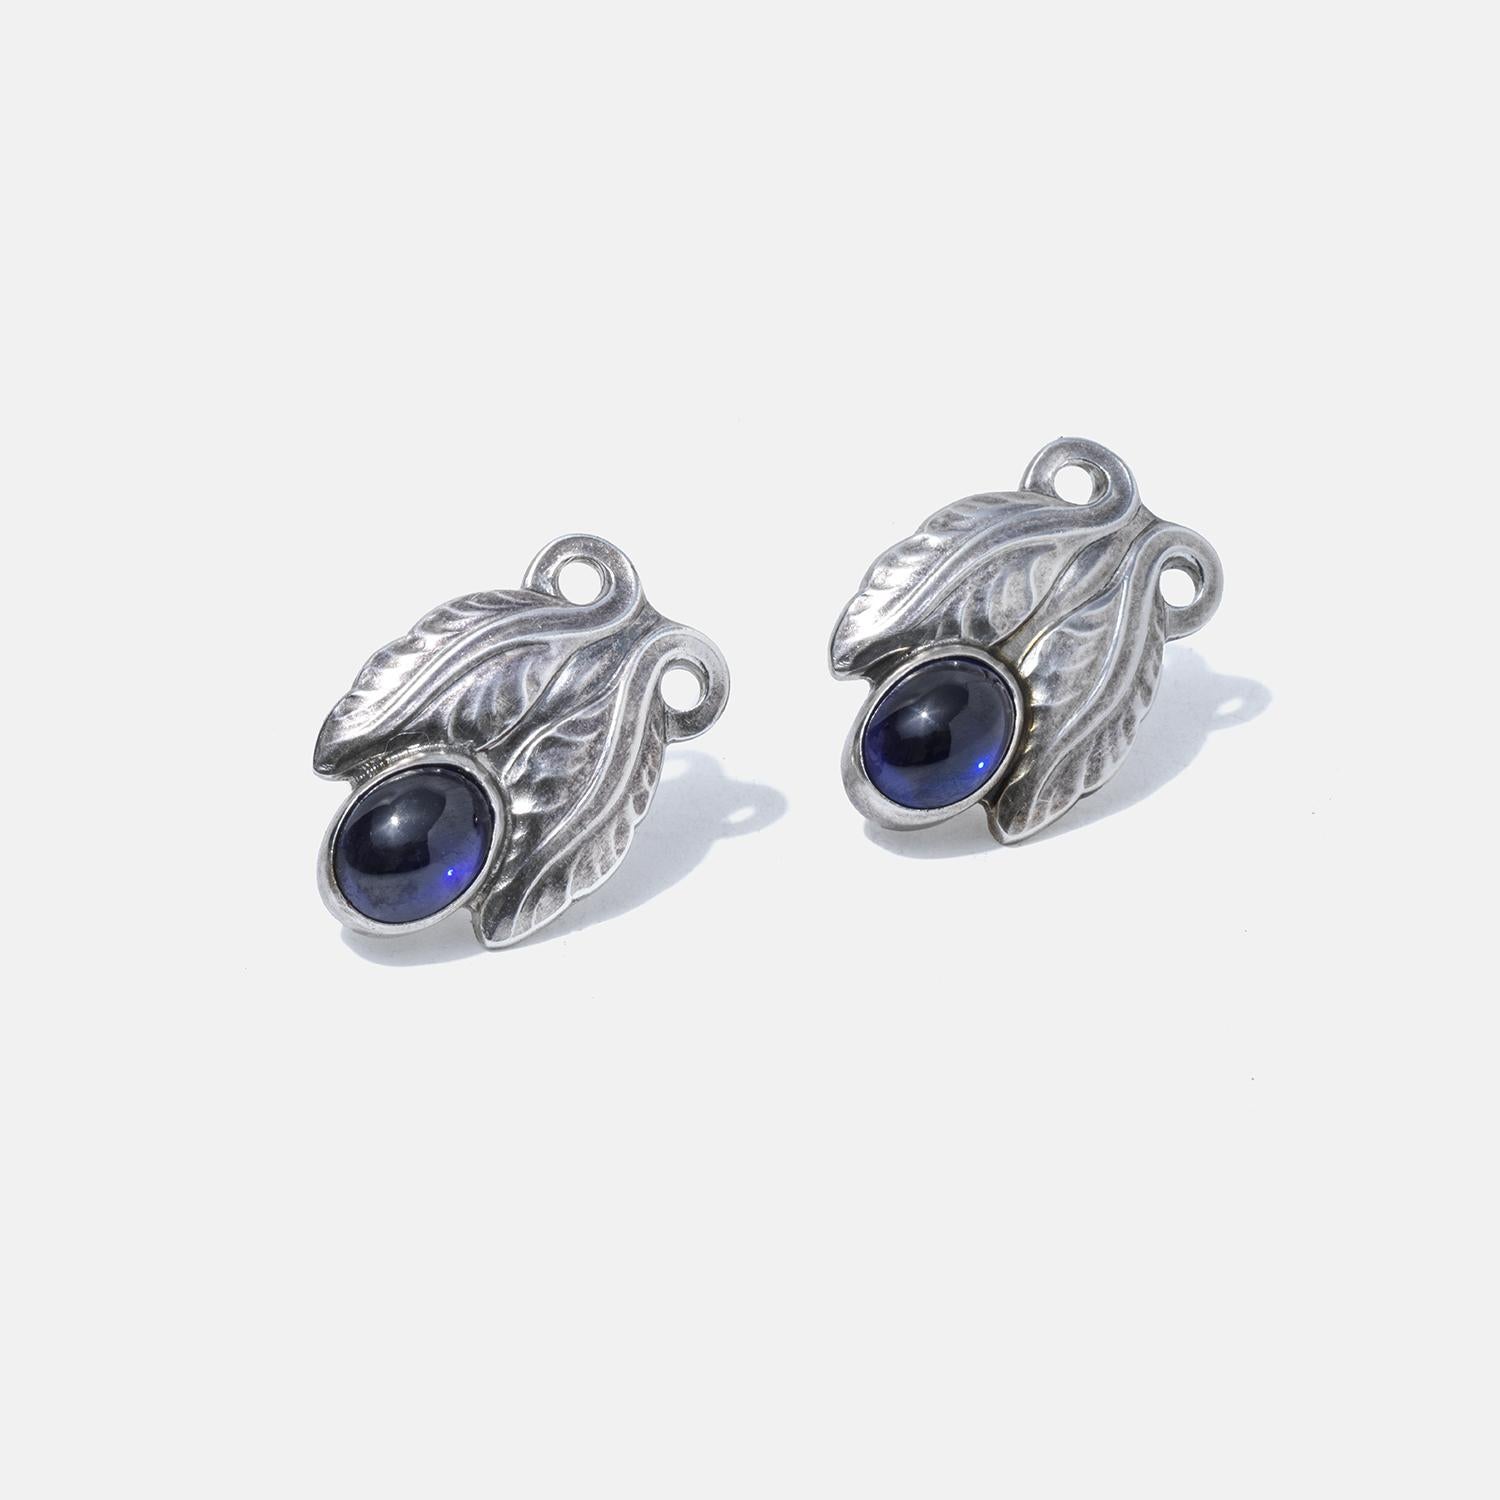 Ces boucles d'oreilles en argent sterling sont ornées de pierres d'un bleu profond nichées dans des motifs en forme de feuilles, ajoutant une touche d'élégance inspirée par la nature. Les motifs de feuilles complexes bercent les pierres, reflétant